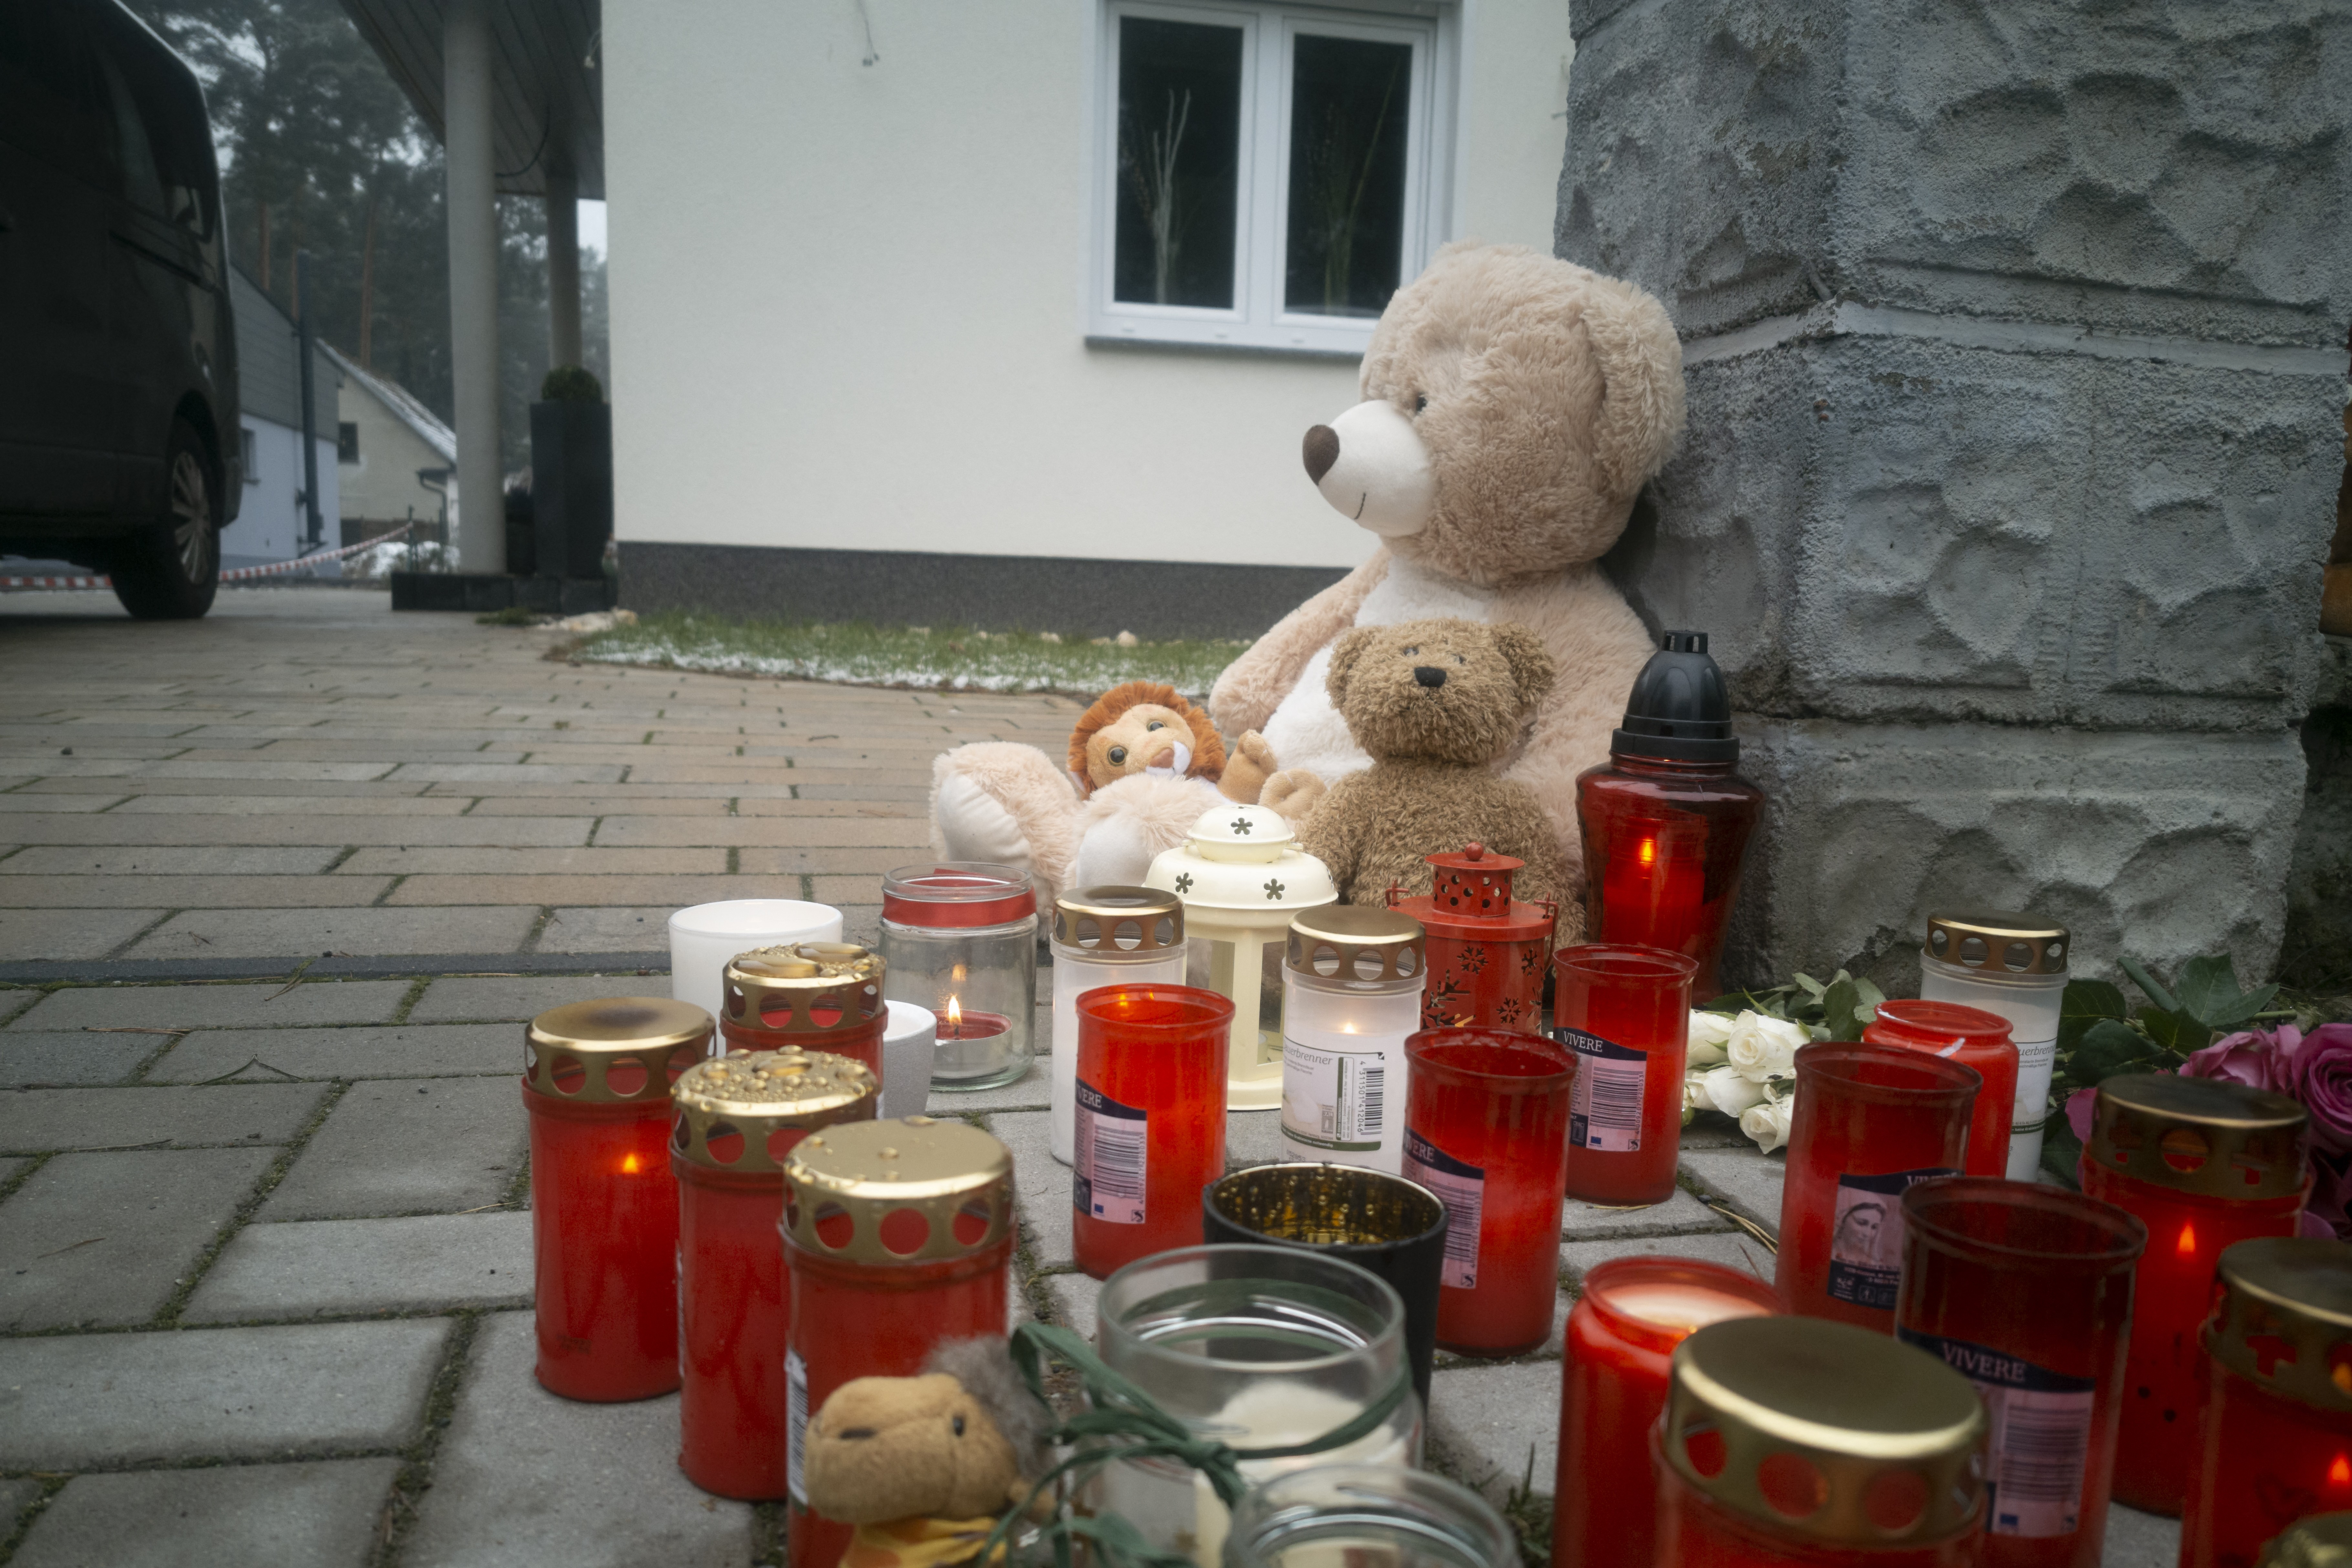 Ein deutscher Vater hat seine Familie getötet, nachdem er einen Impfpass gefälscht hatte